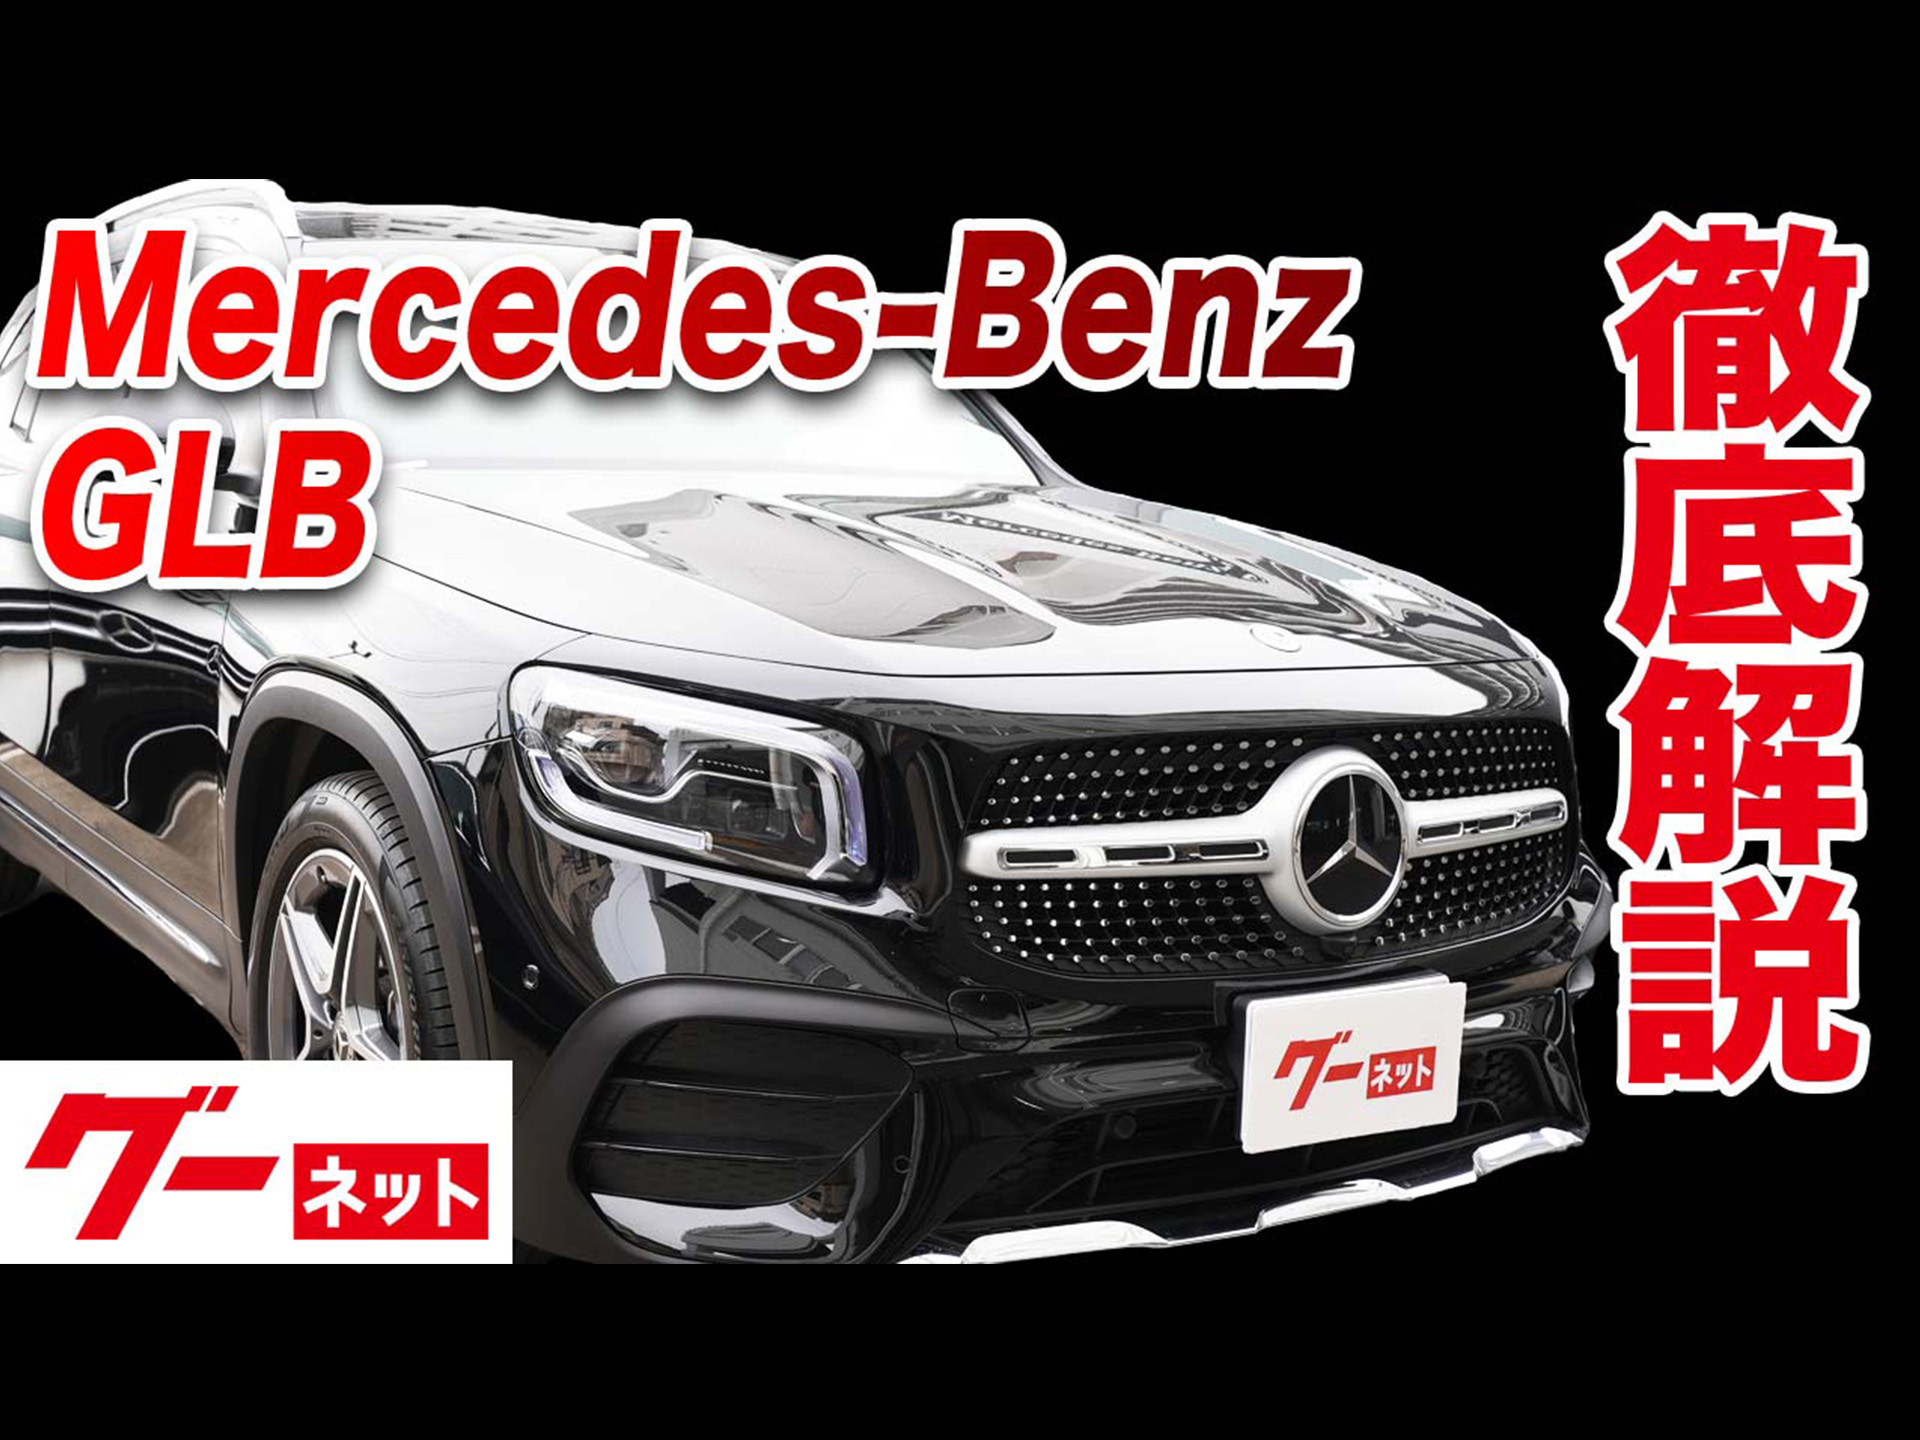 【メルセデス・ベンツ GLB】X247 GLB200d 4マチック グーネット動画カタログ